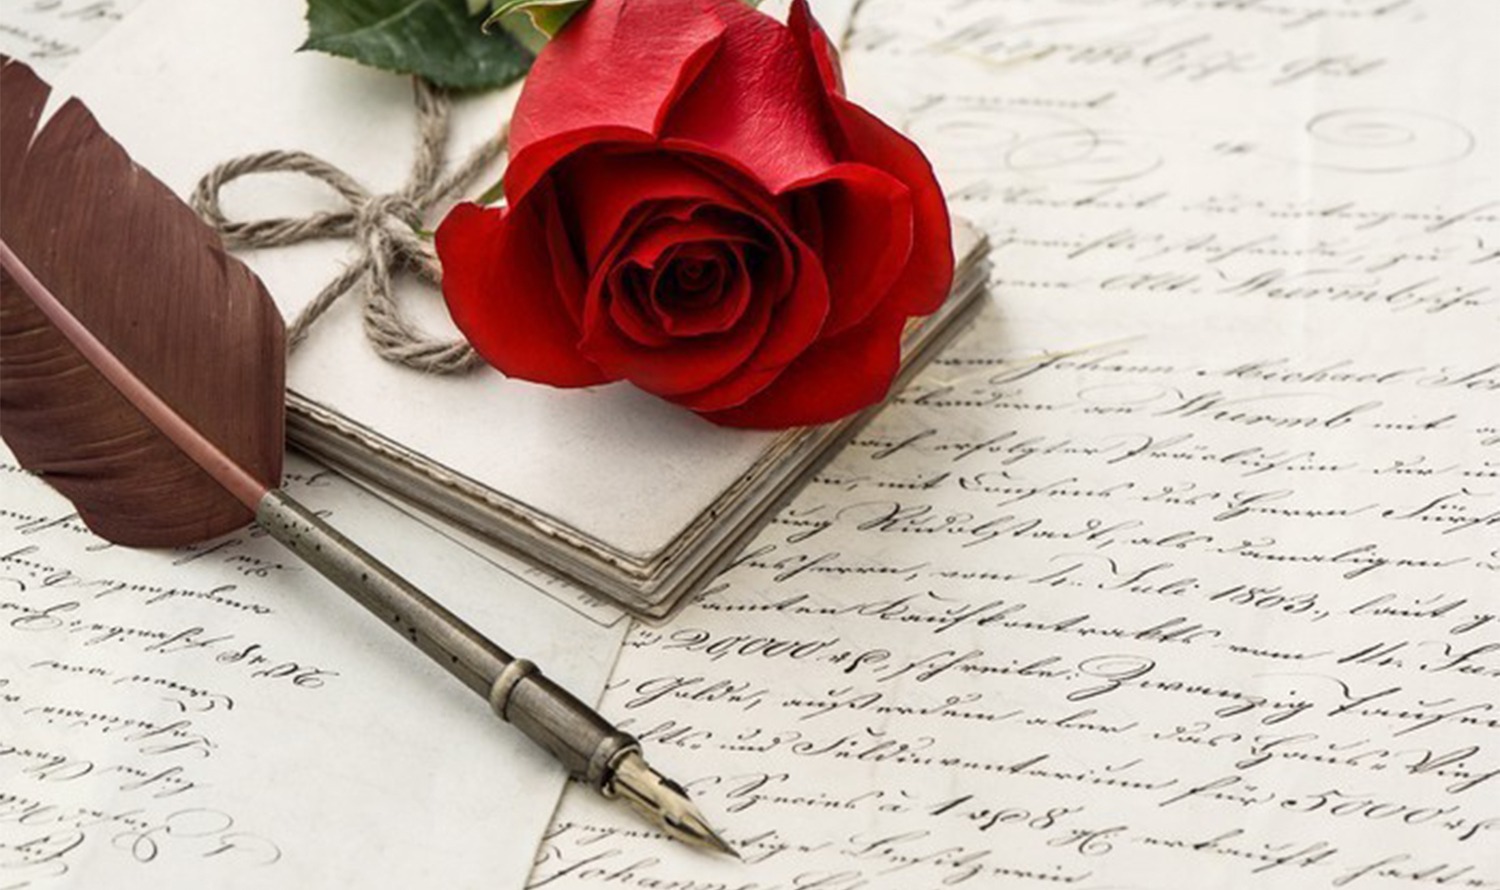 Resimde kırmızı bir gül, eski bir dolma kalem ve birkaç el yazısıyla yazılan mektuplar nostaljik bir atmosfer yaratıyor.